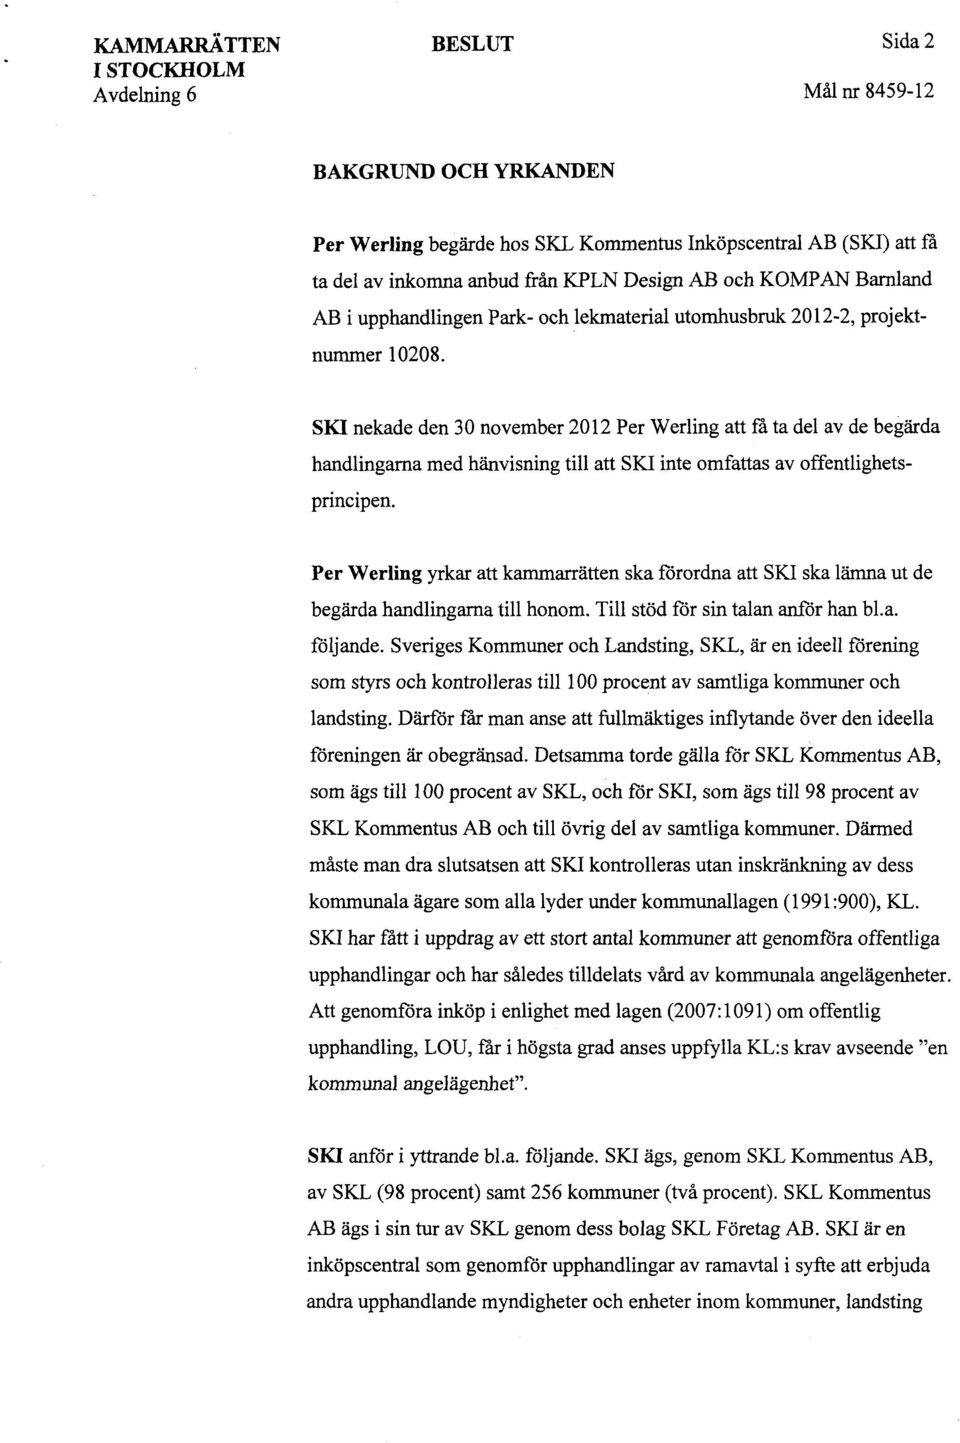 SKI nekade den 30 november 2012 Per Werling att få ta del av de begärda handlingarna med hänvisning till att SKI inte omfattas av offentlighetsprincipen.